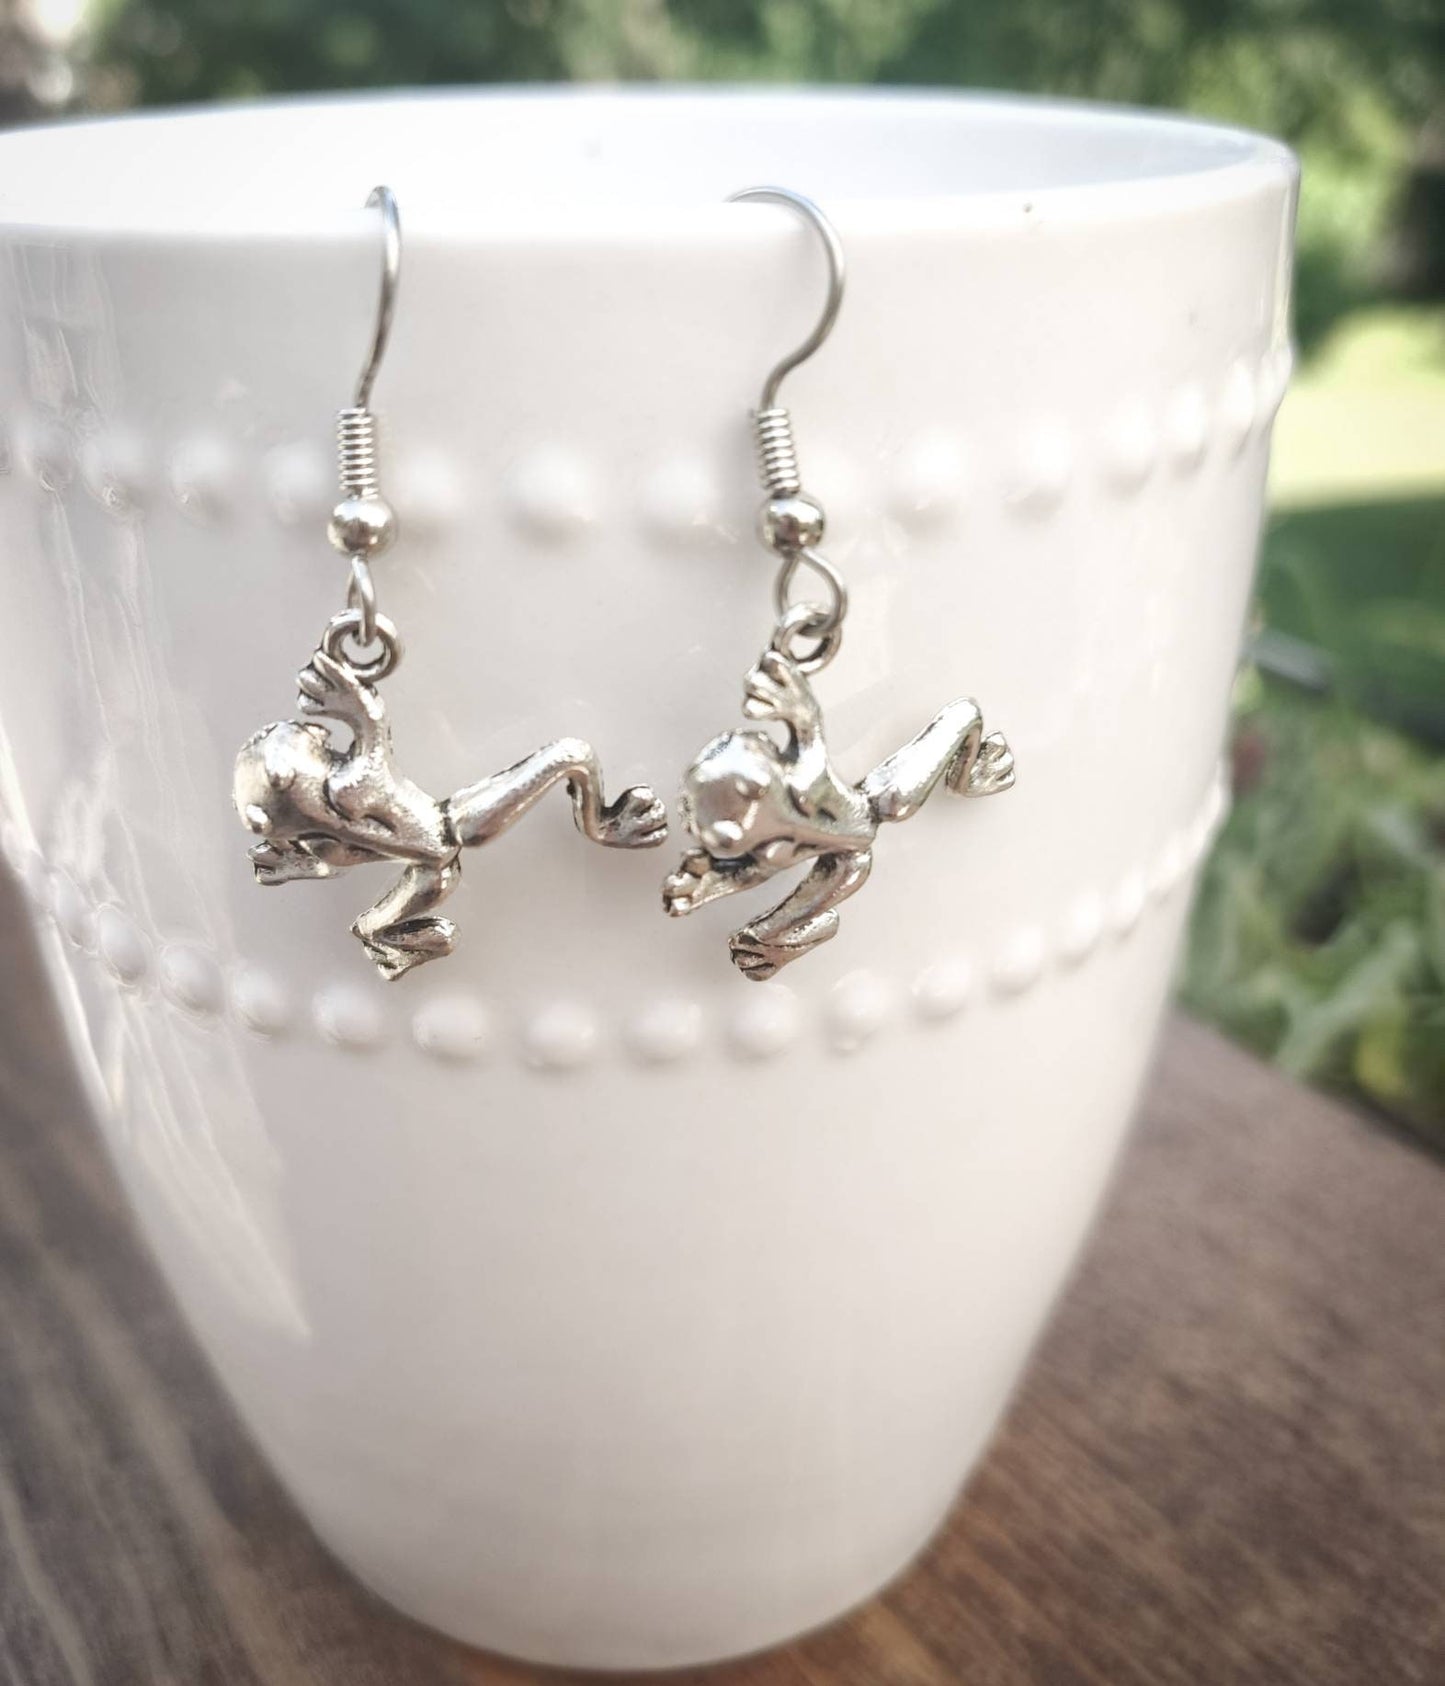 Frog Earrings, Frog Lover Earrings, Frog Jewelry, Frog Jewelry Gift, Frog Gift, Gift for Her, Animal Earrings, Animal Jewelry, Birthday Gift